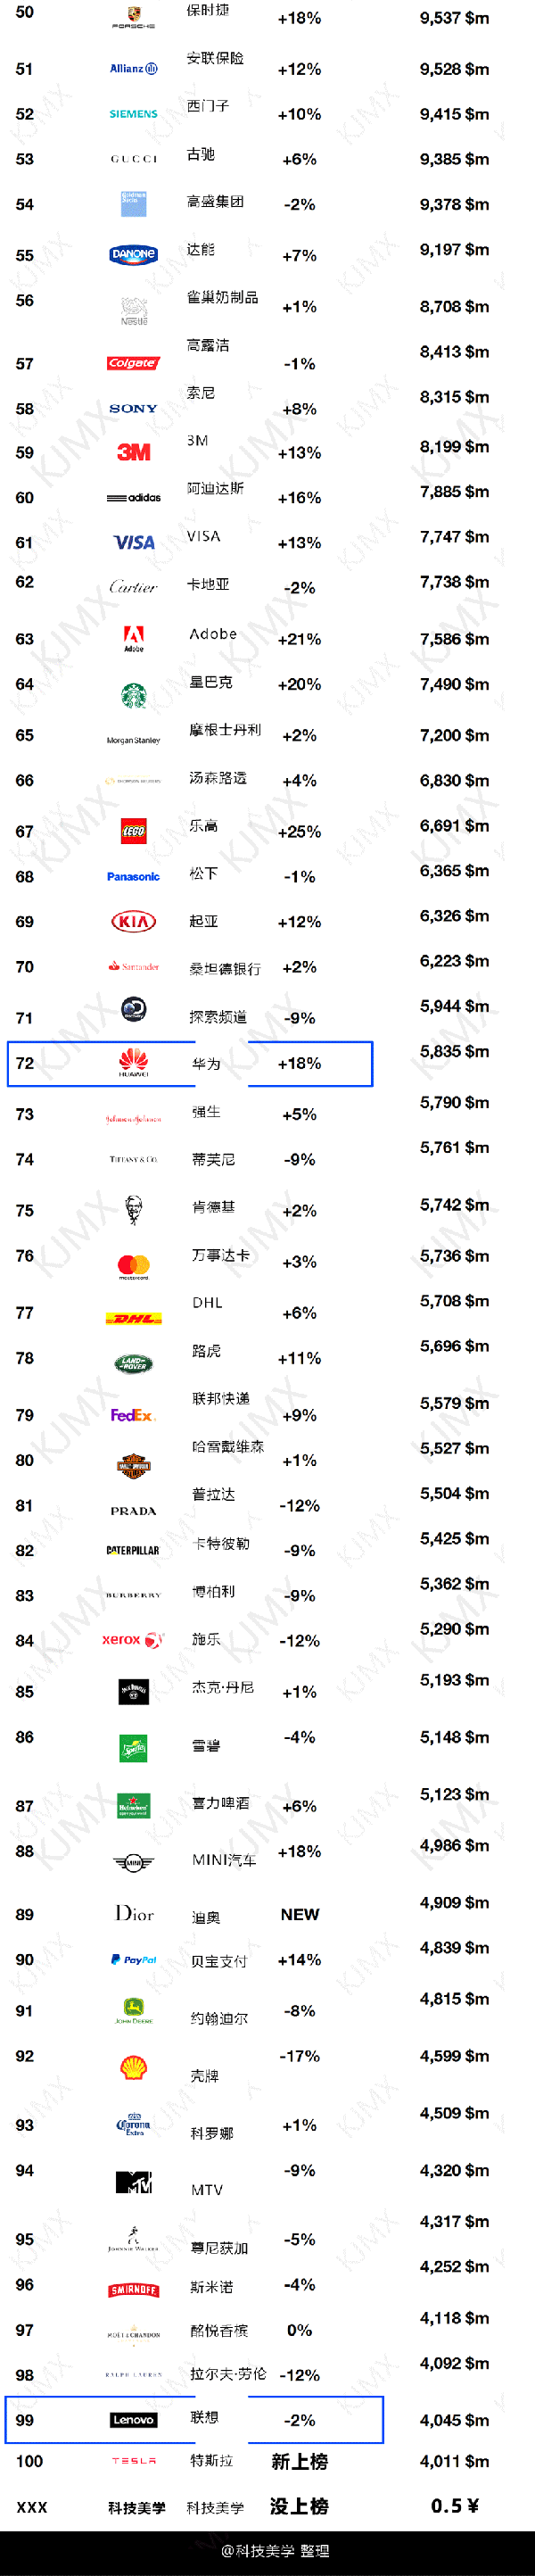 码报:【j2开奖】全球品牌排名前100 中国入围2家 你猜是谁